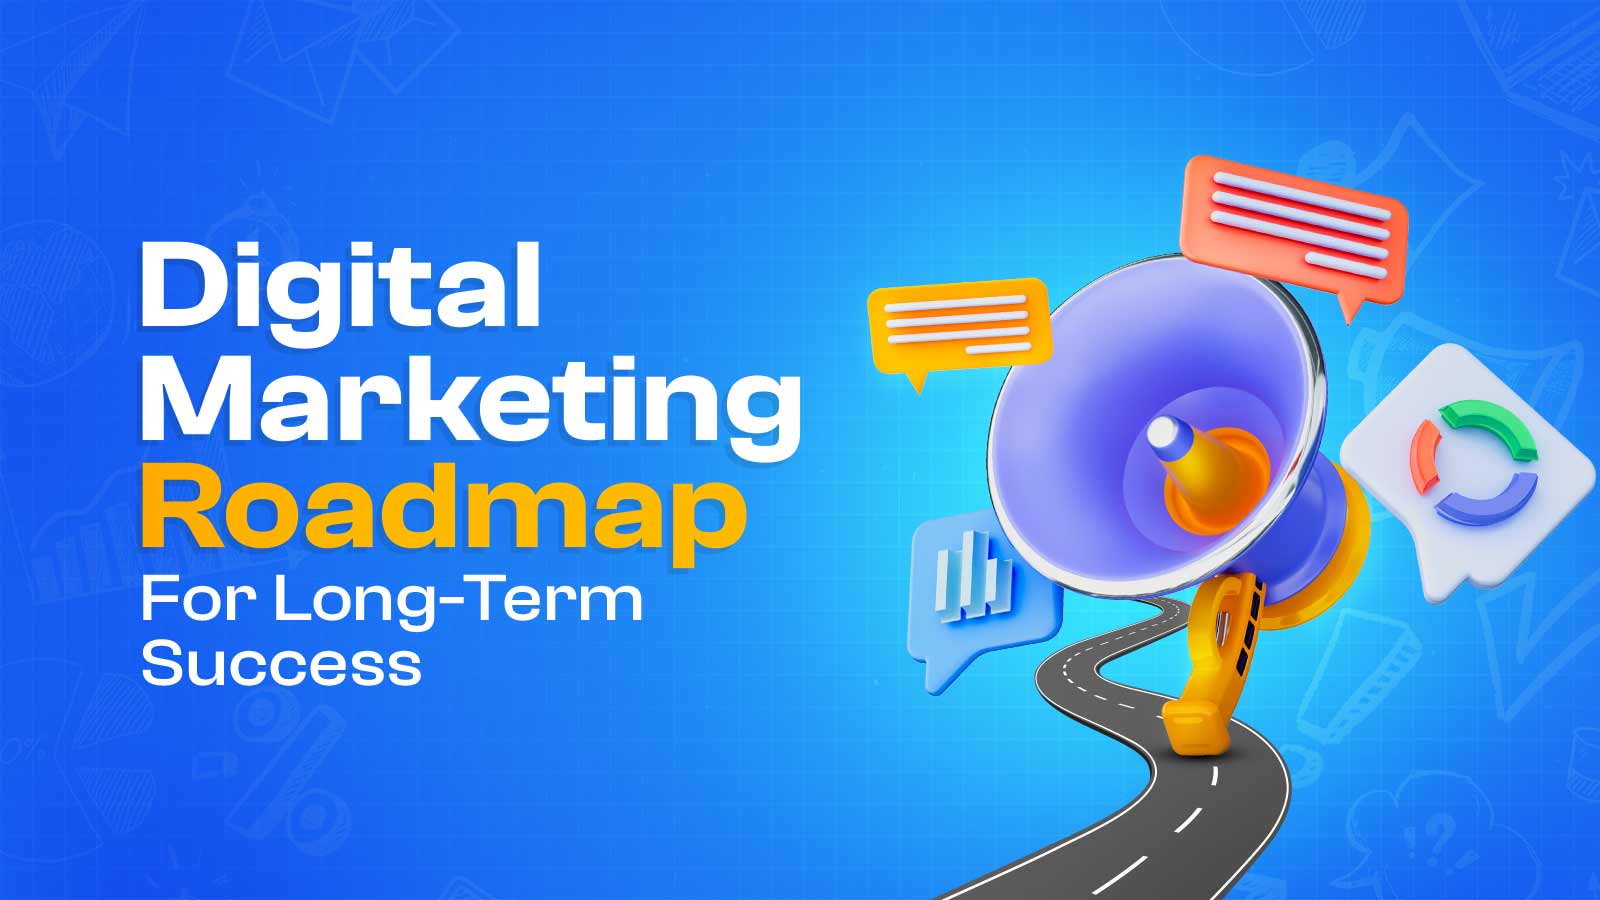 Digital Marketing Roadmap For Long-Term Success